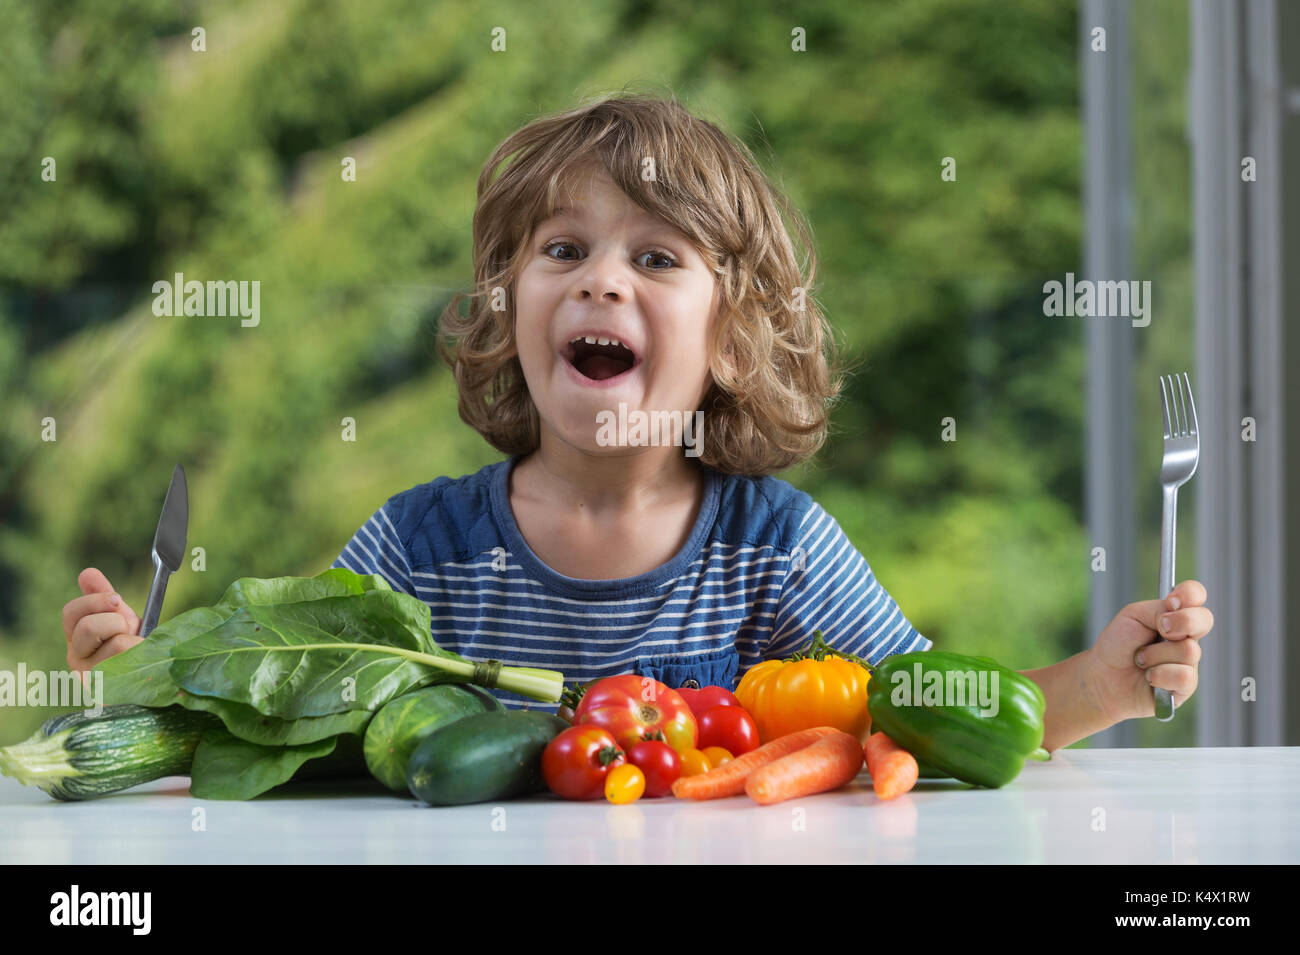 Cute little boy sentado en la mesa entusiasmados con comida vegetal, malos o buenos hábitos alimenticios, nutrición y alimentación saludable, mostrando emociones concepto Foto de stock